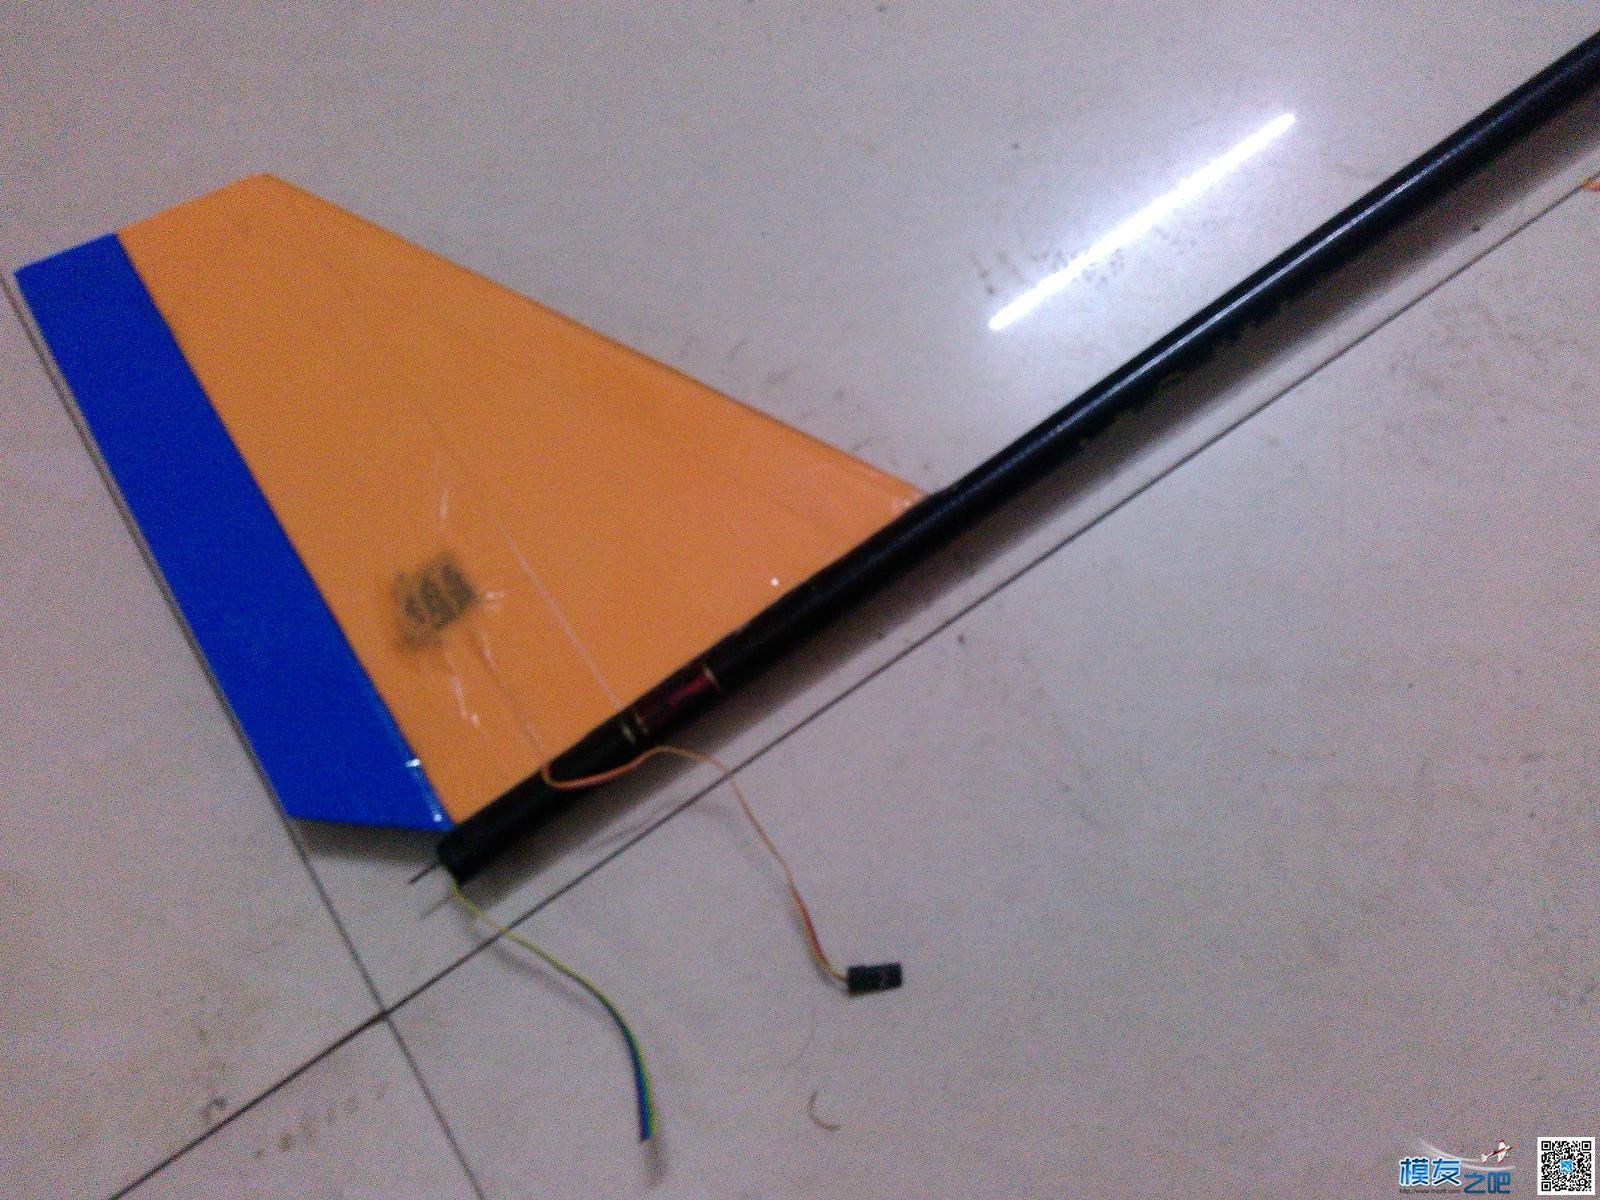 用瓶子折纸法制作滑翔机机头机身。已完成。老鸟别笑。.... 碳纤维,滑翔机,制作,专业 作者:cyb2688 7970 